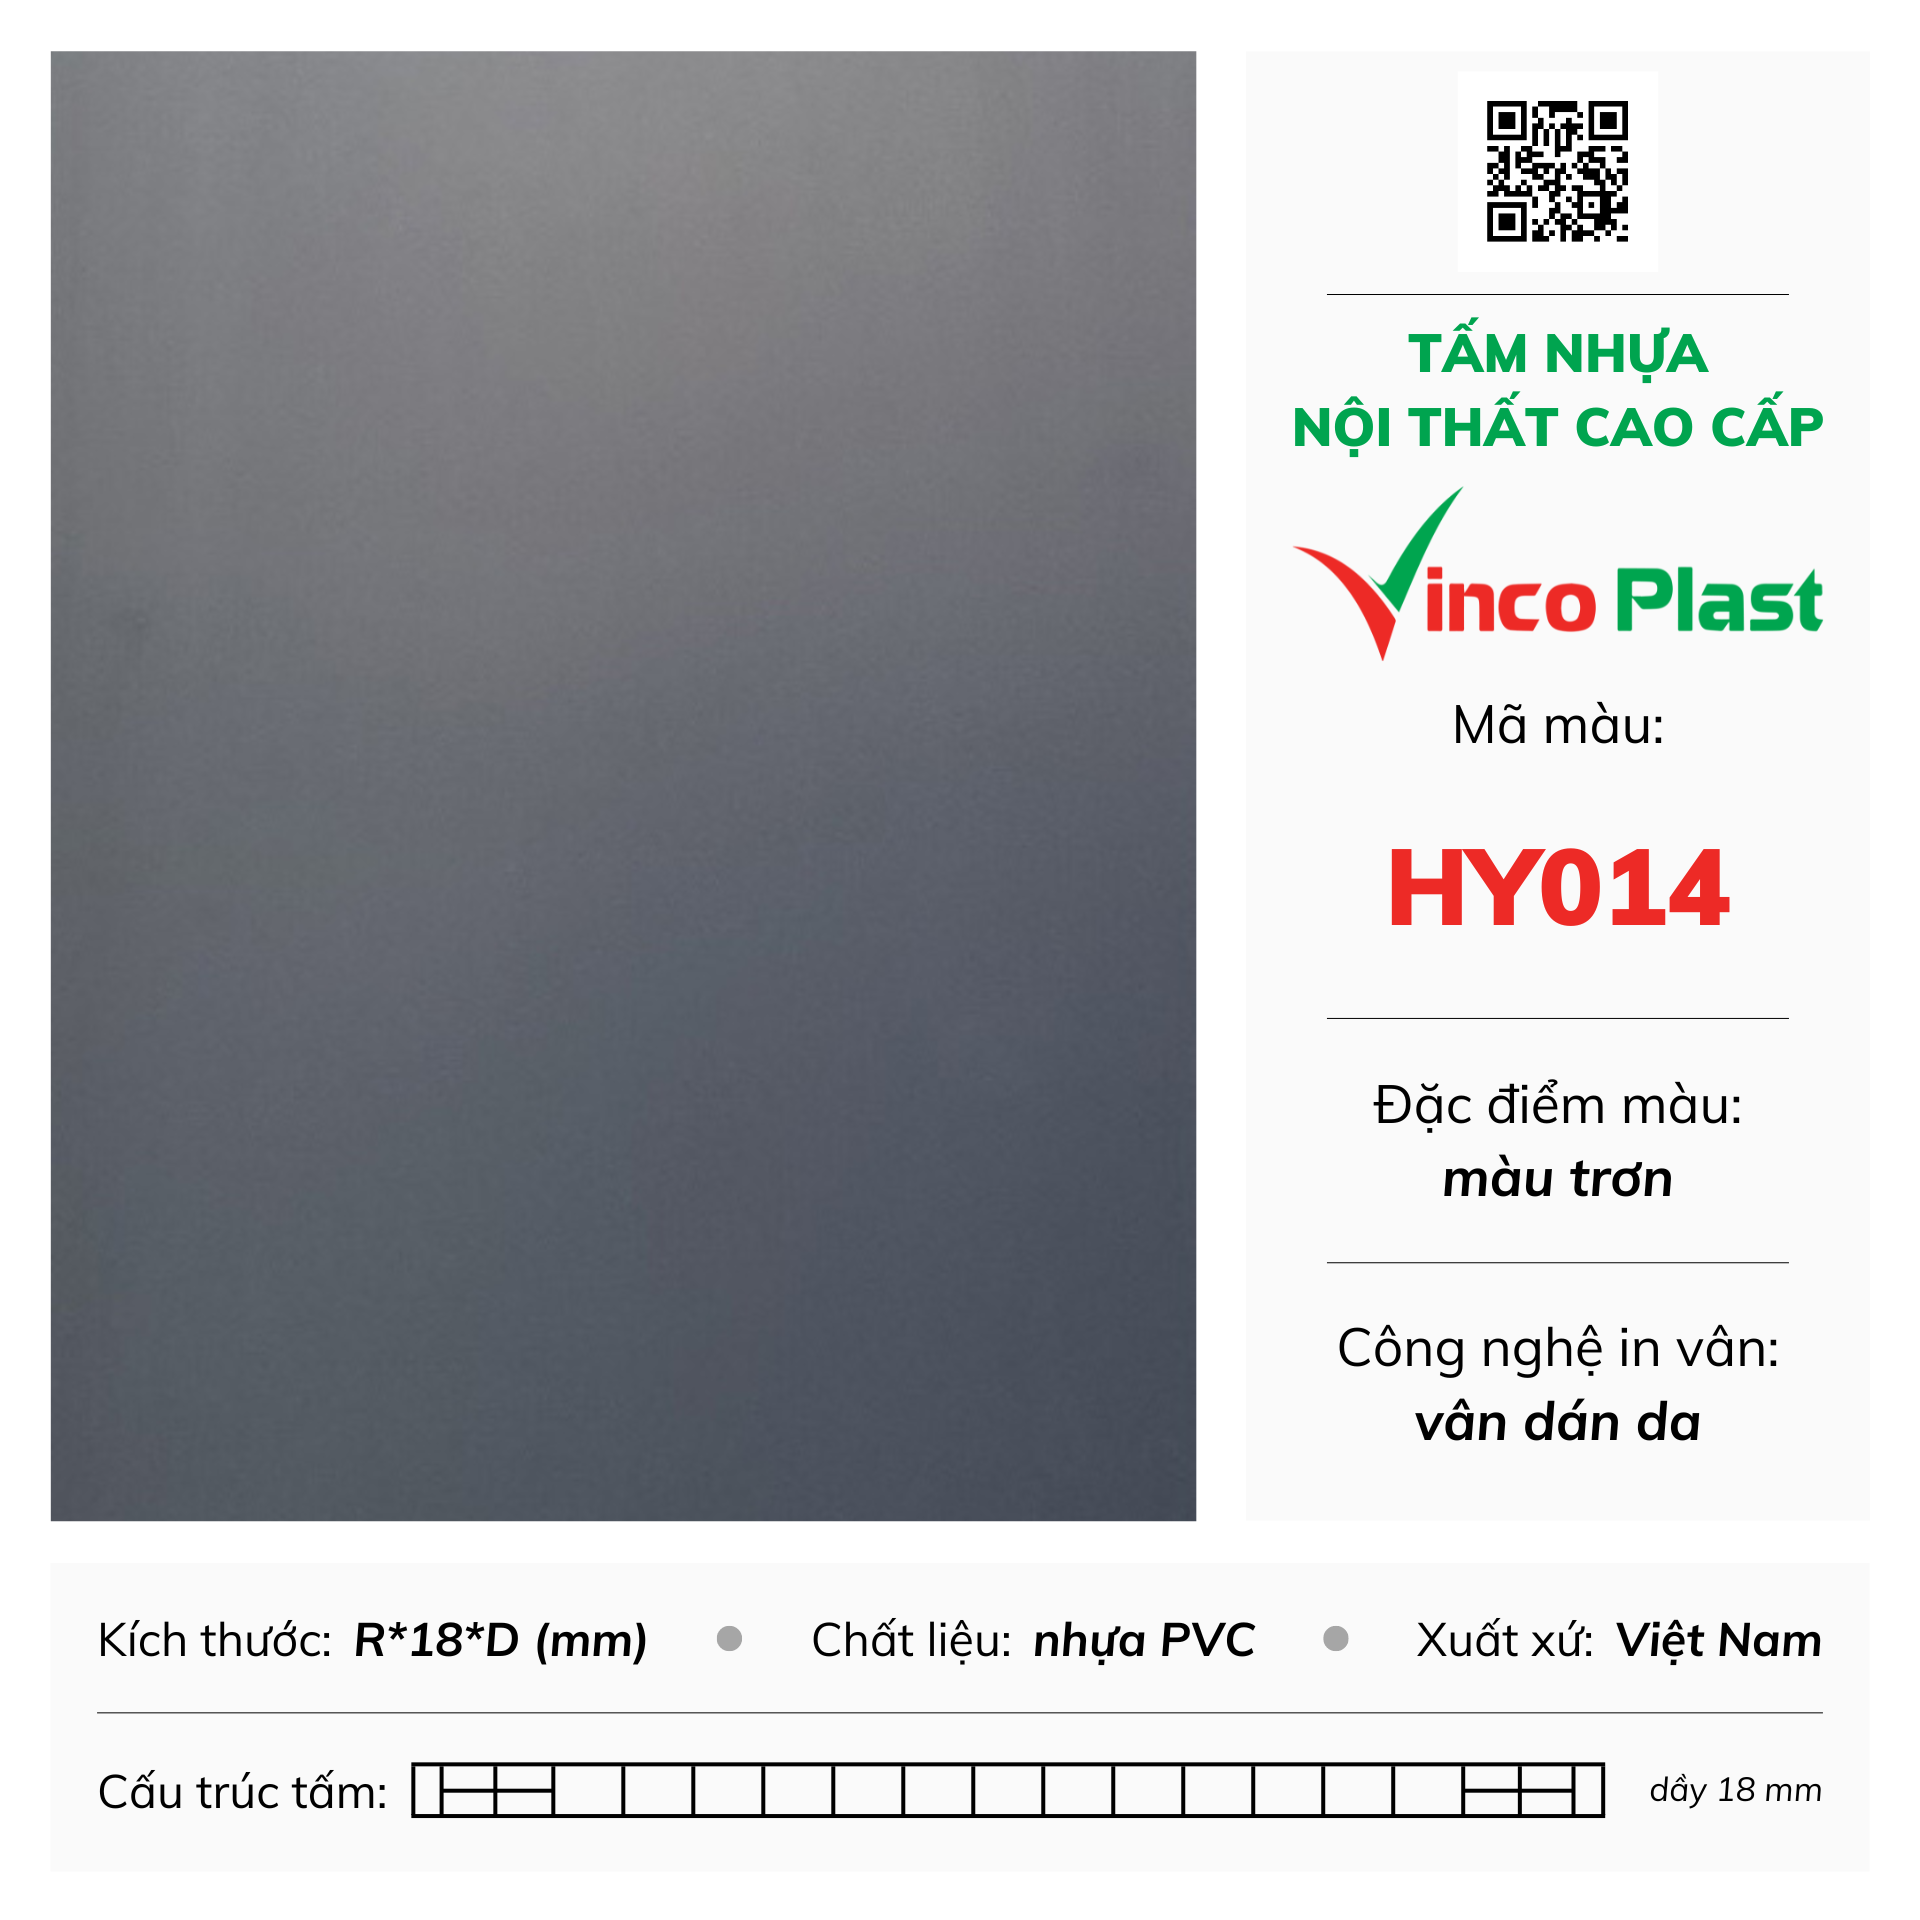 Tấm nhựa nội thất cao cấp Vincoplast màu hy014